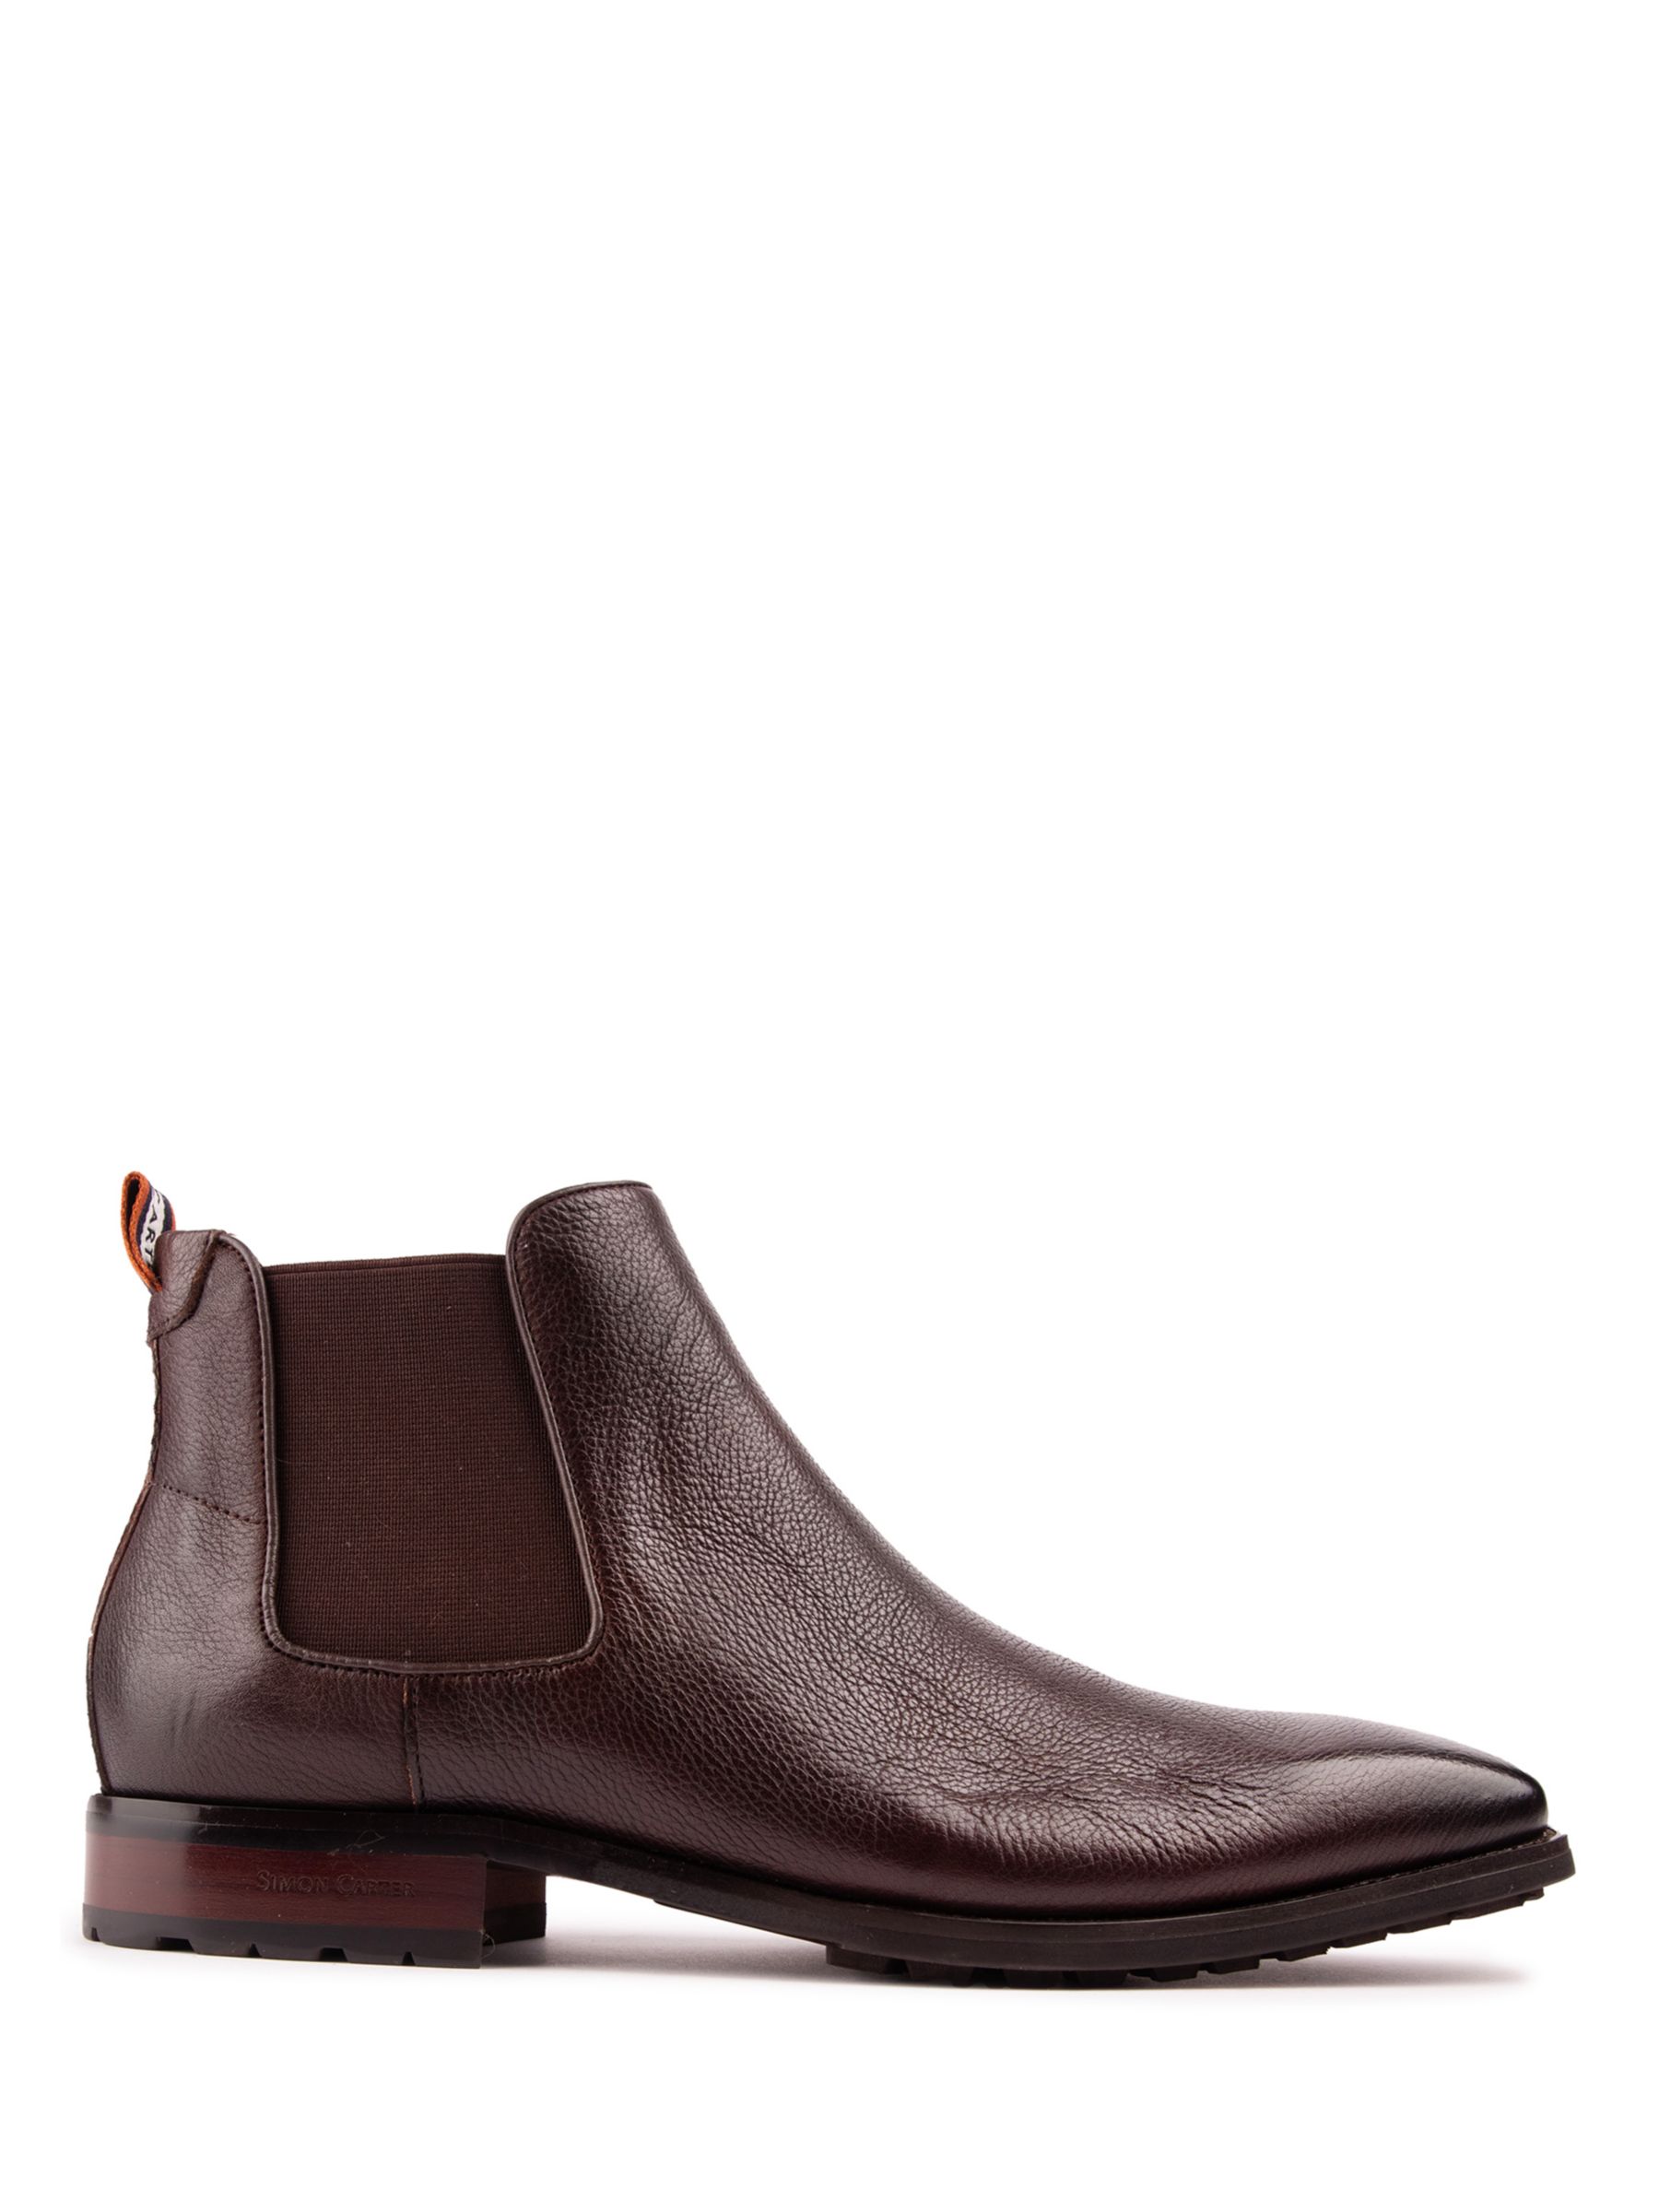 Кожаные ботинки челси Clover Simon Carter, коричневый ботинки челси astrex simon carter коричневый